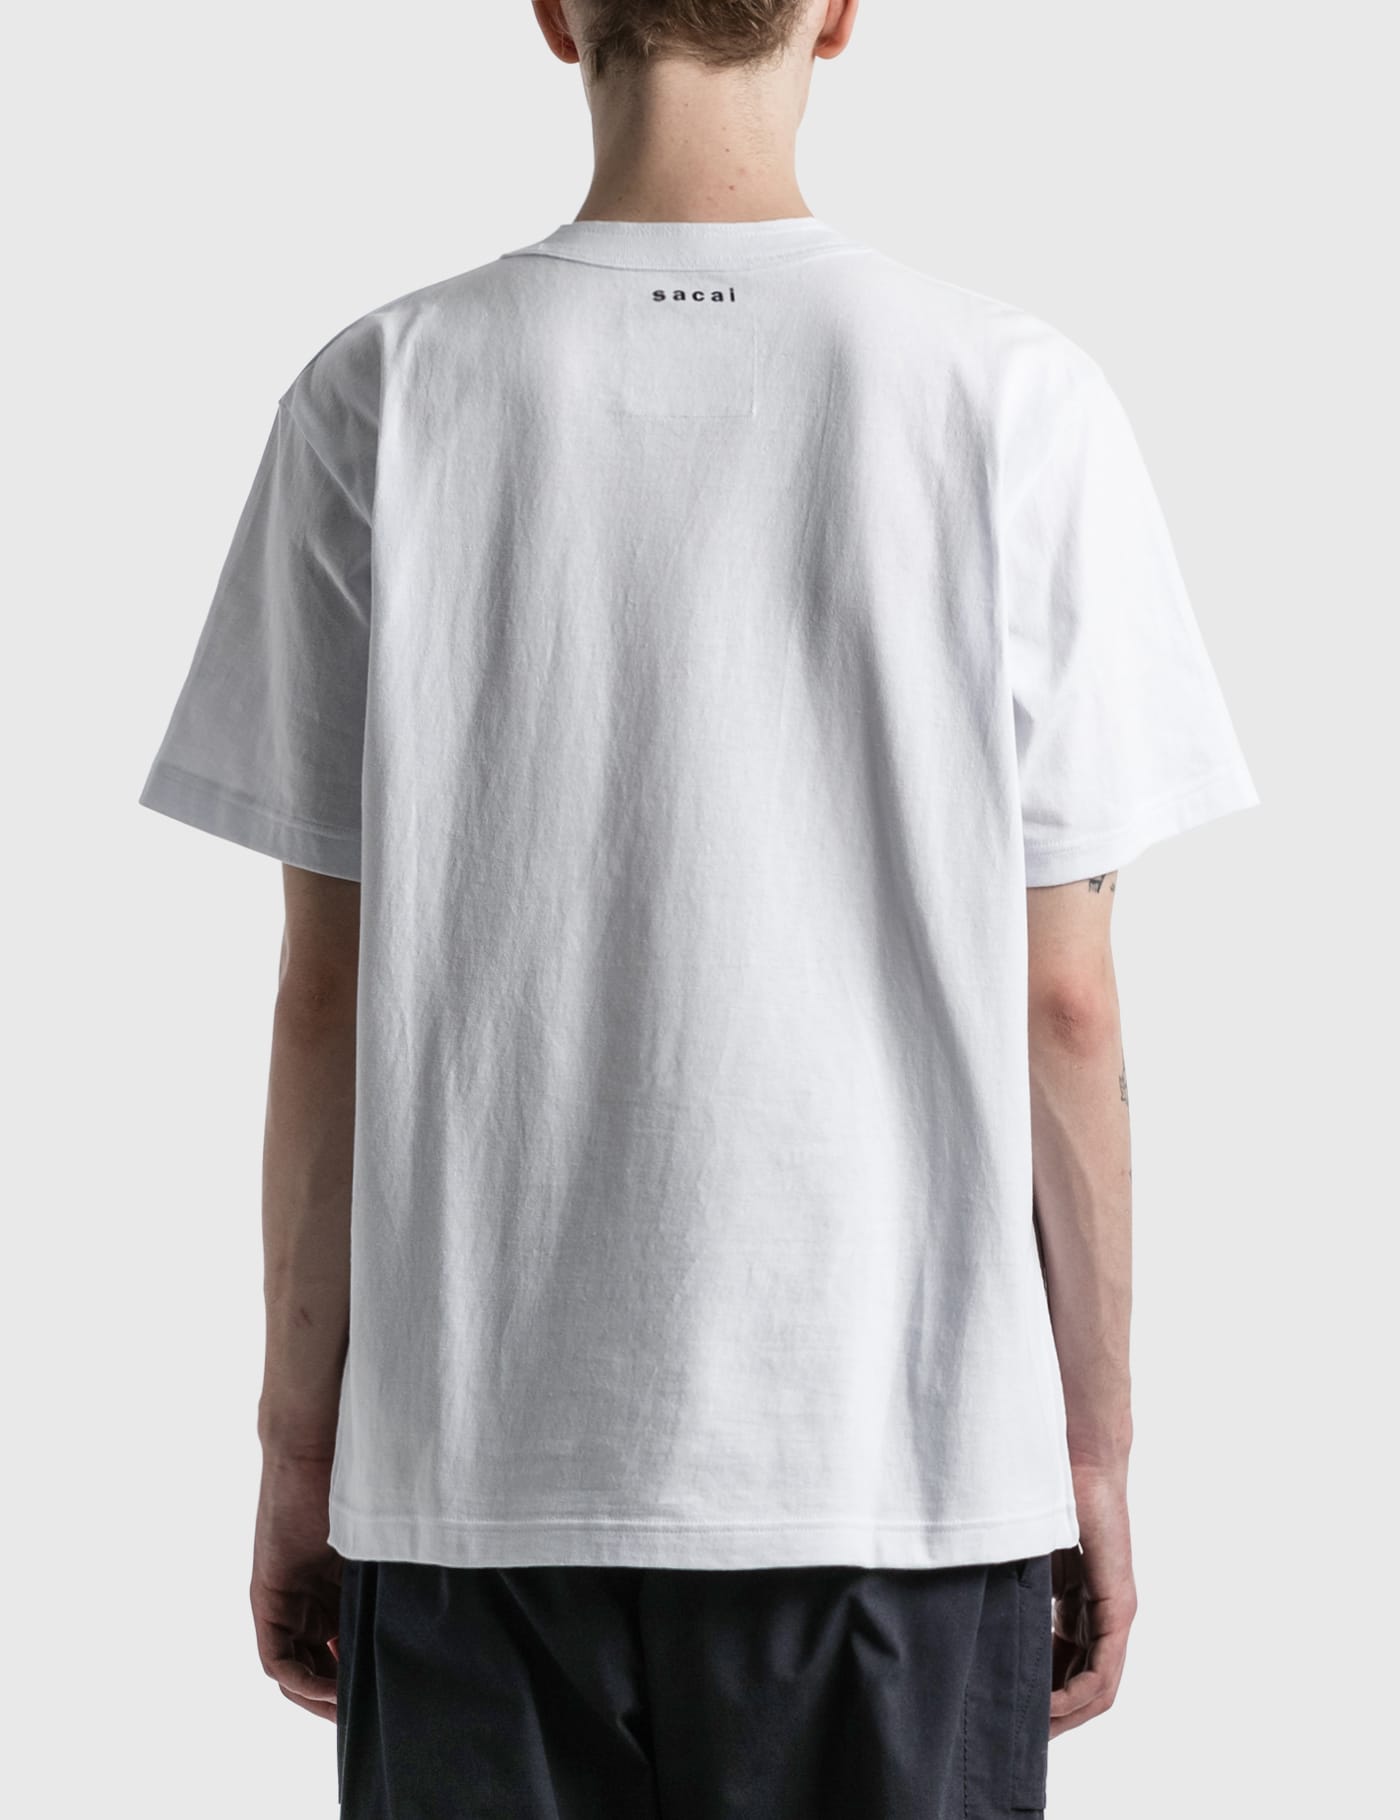 未使用品です【TOGA/トーガ】Cotton zip T-shirt/コットンジップTシャツ